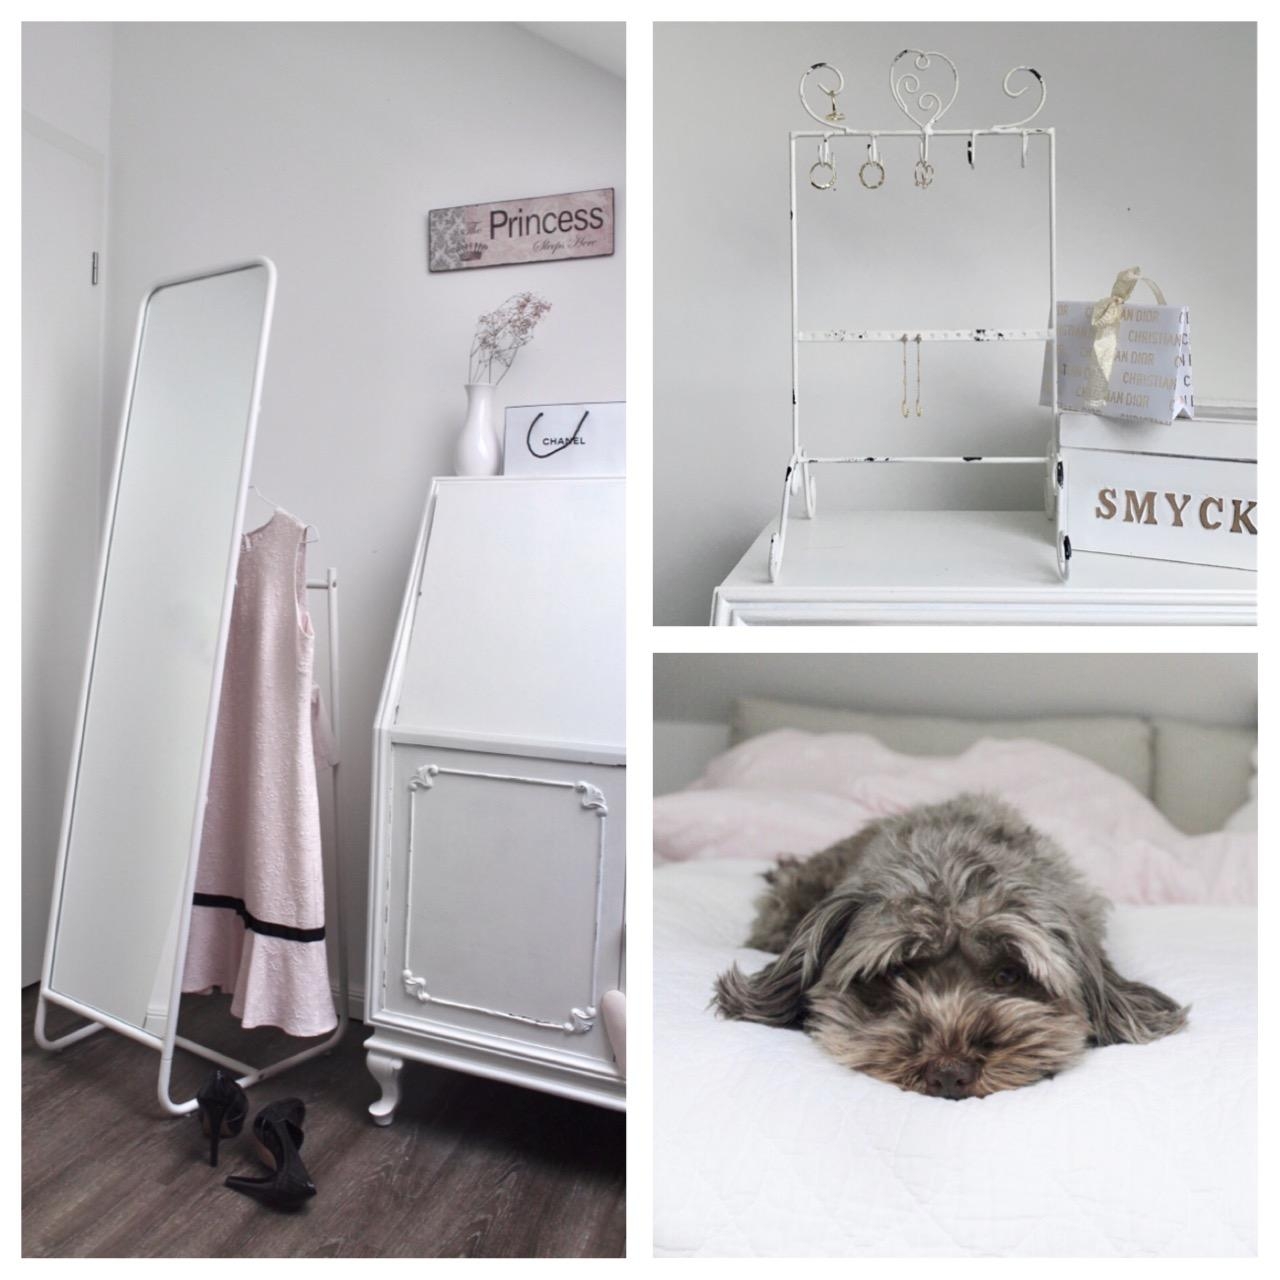 Mein #Lieblingsplatz ist mein Schlafzimmer #home #smycken#scandistyle#pink#white #wood#bedroom#hund#meetthecommunity